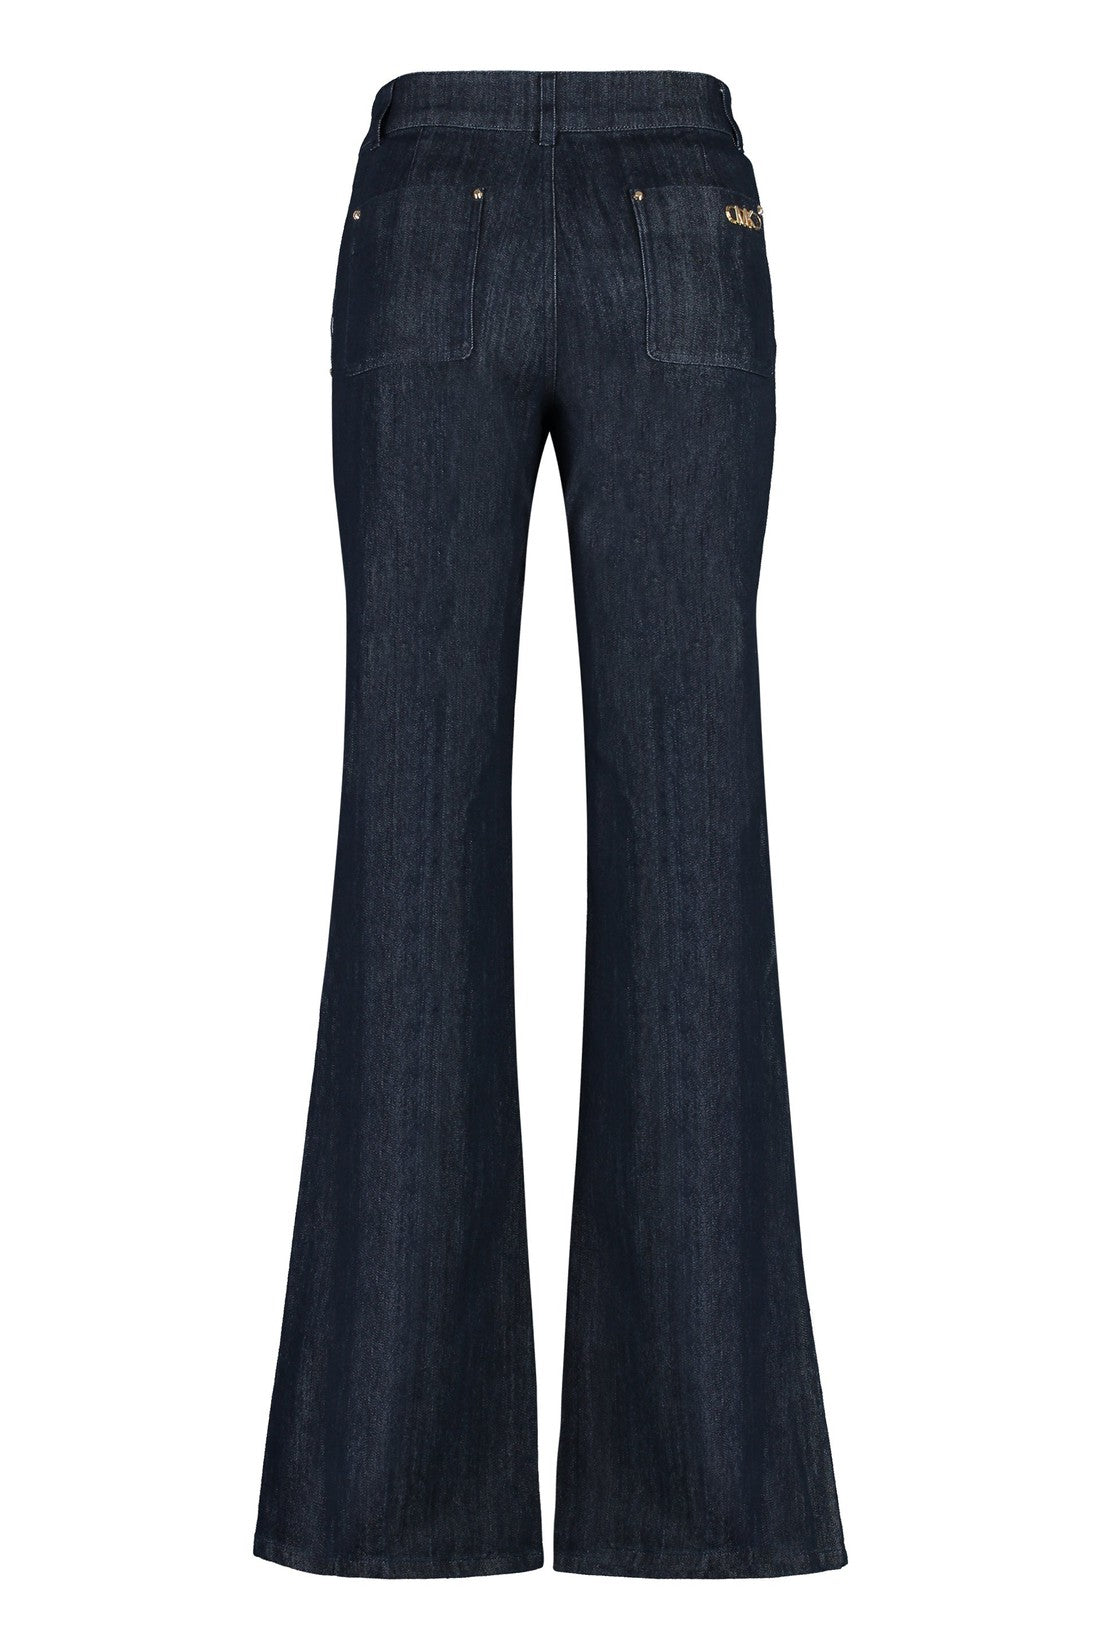 MICHAEL MICHAEL KORS-OUTLET-SALE-Bootcut jeans-ARCHIVIST